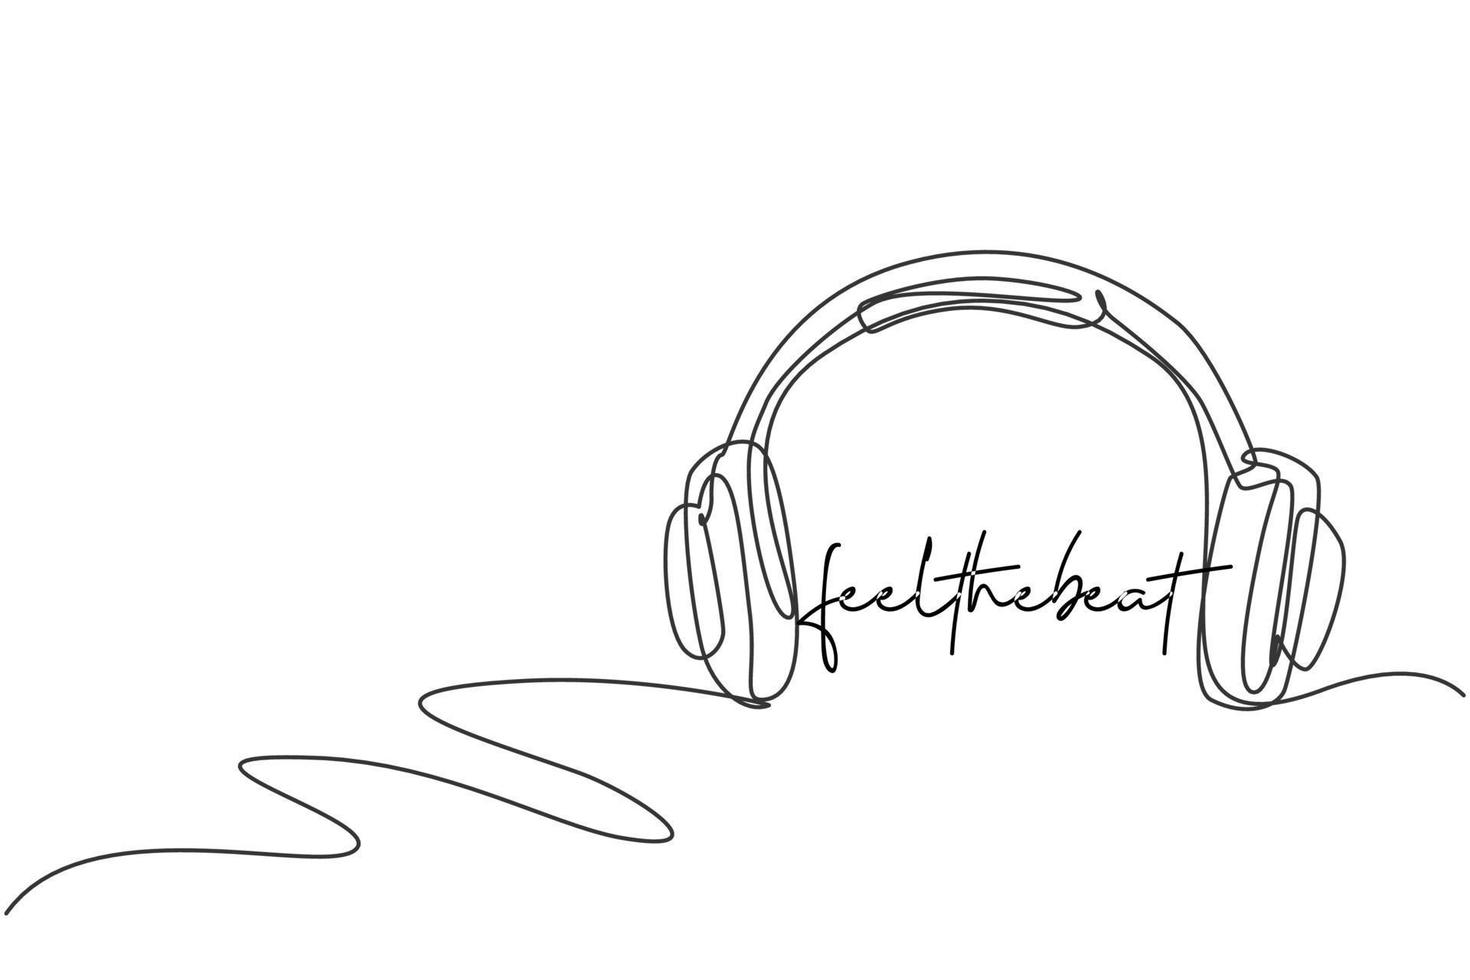 dibujo de línea continua única de radio de auriculares con etiqueta de logotipo de cable largo. concepto de icono de logotipo de empresa de audio musical. Ilustración de vector de diseño gráfico de dibujo de una línea moderna